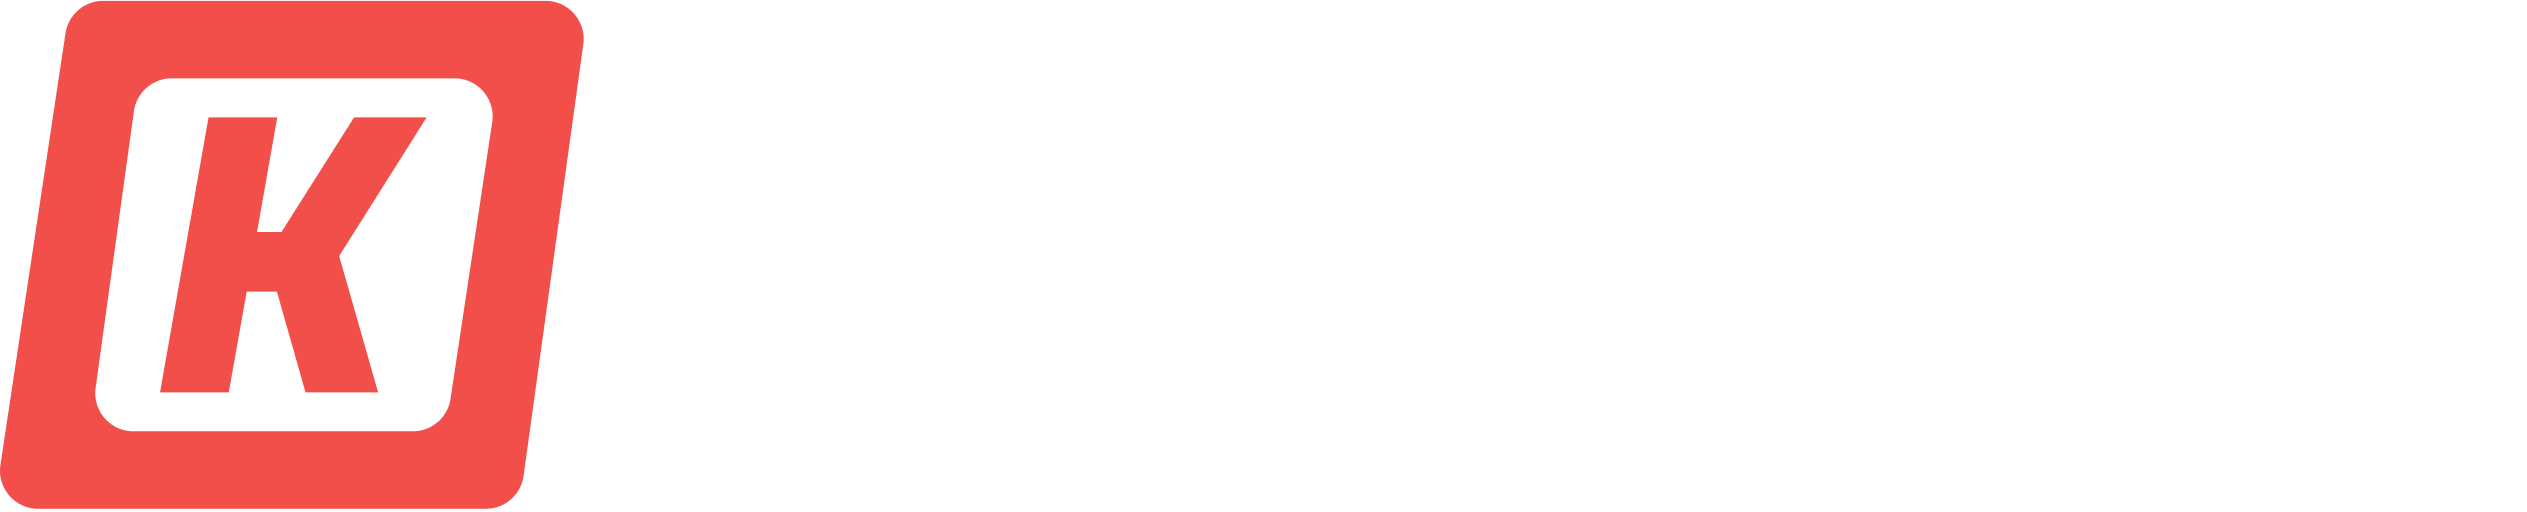 Kurabu